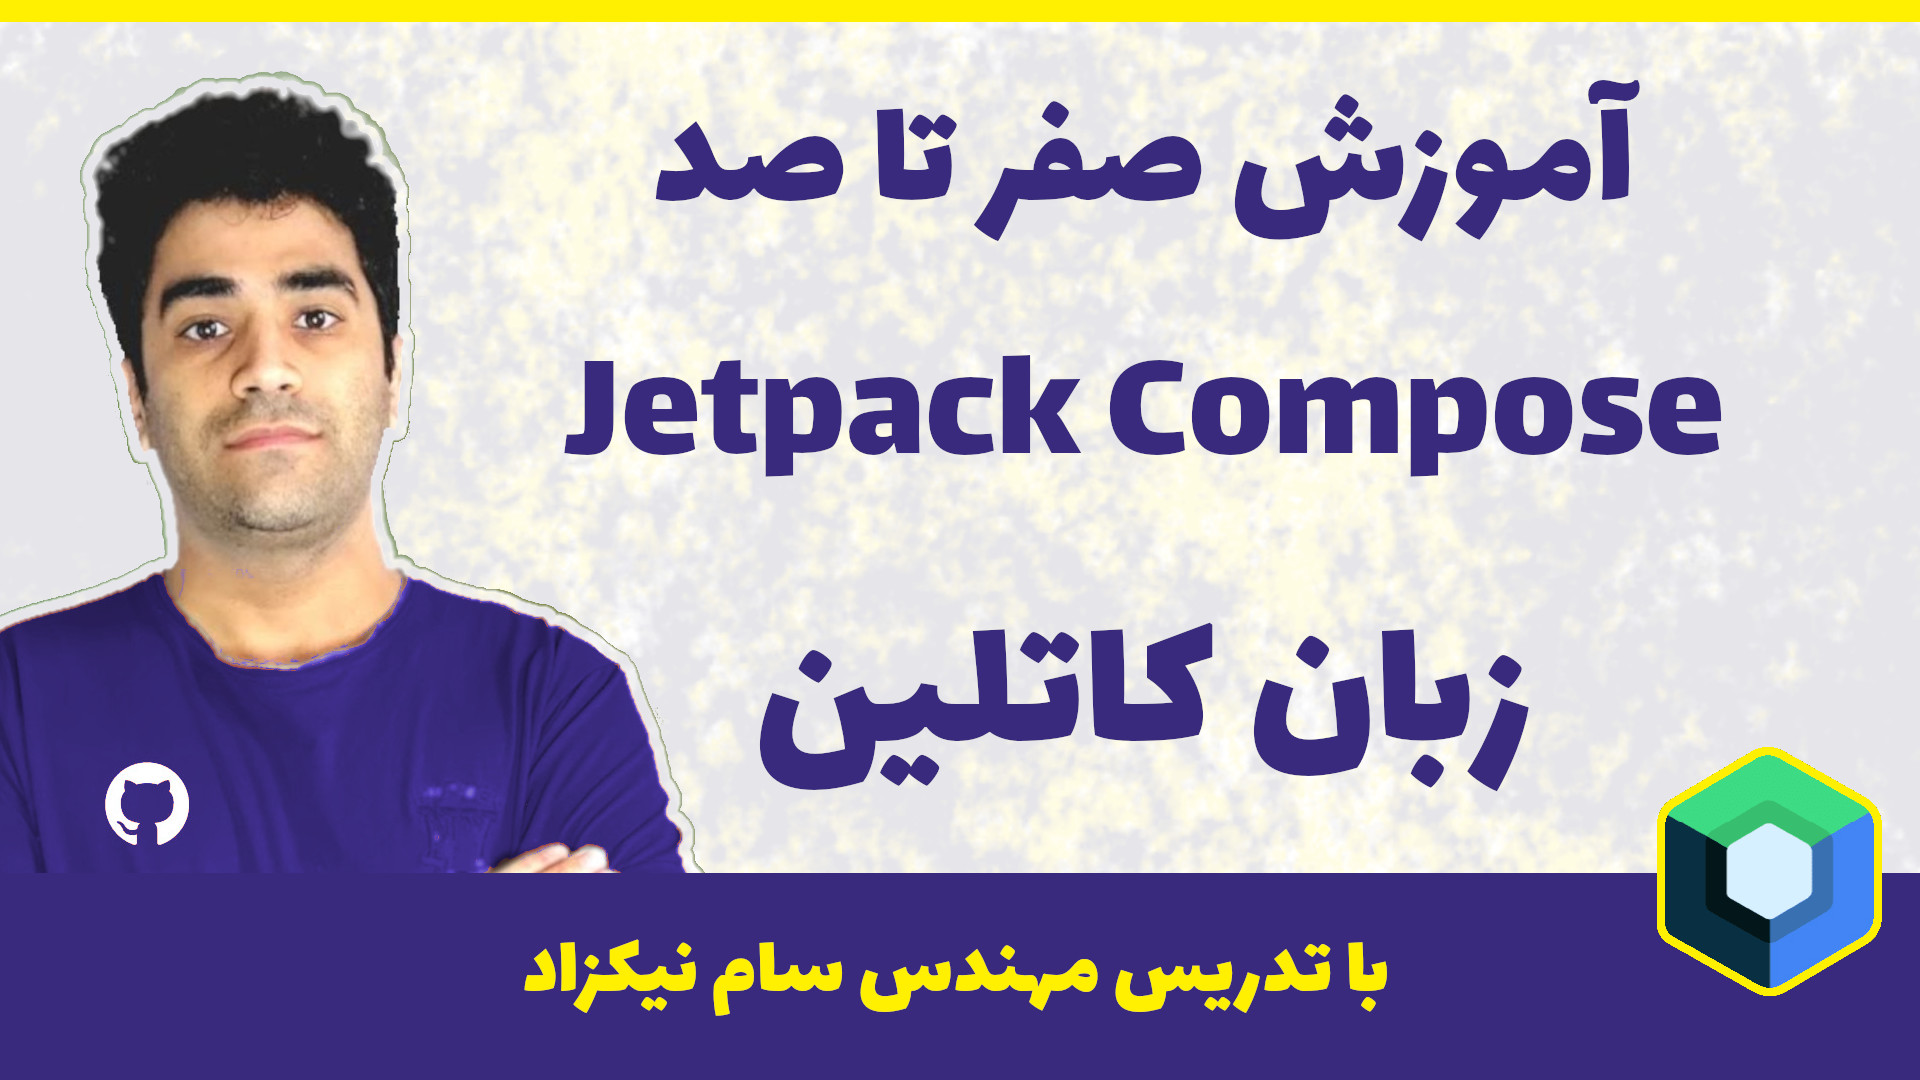 آموزش جت پک کامپوز ( jetpack compose )